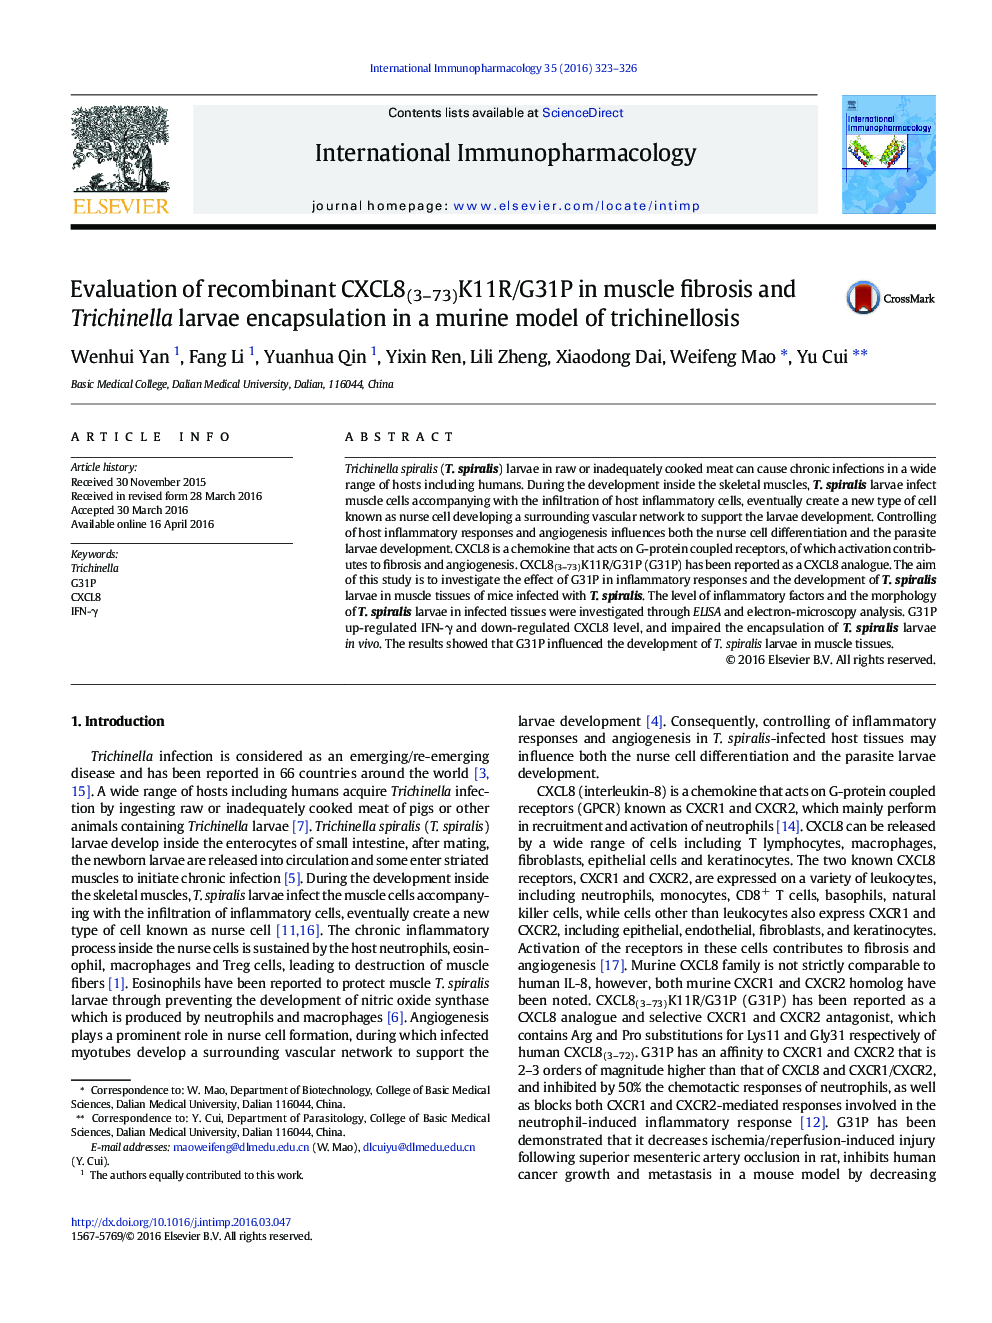 بررسی CXCL8 (3-73) K11R / G31P نوترکیب در فیبروز عضلات و کپسول سازی لارو تریشینلا در یک مدل موشی trichinellosis